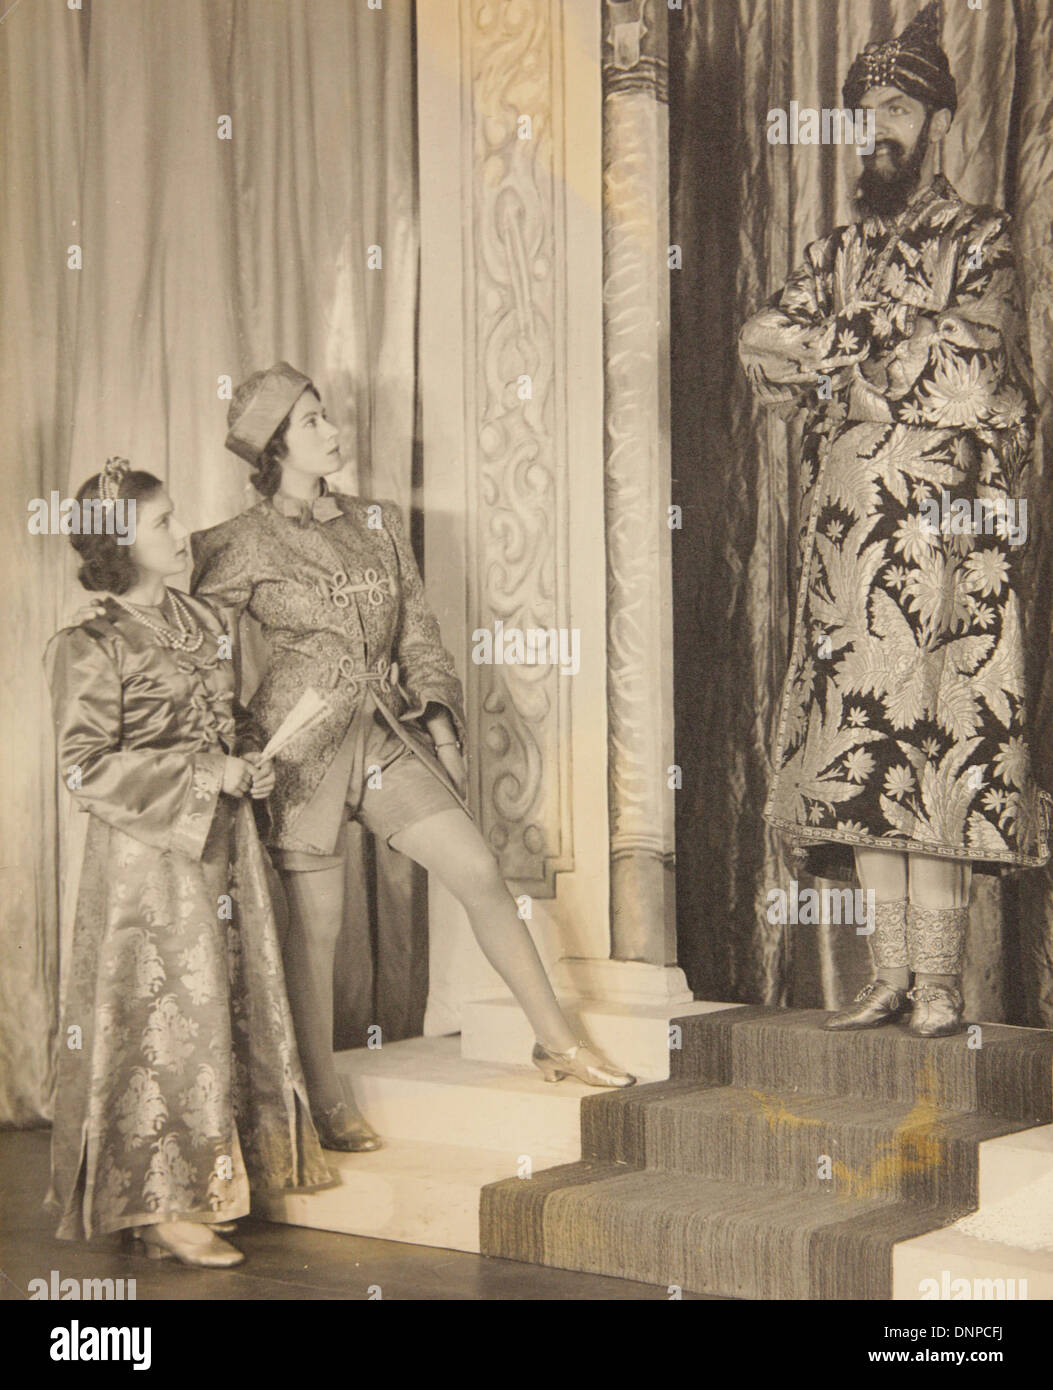 Une photographie de la princesse Margaret (à gauche) la princesse Elizabeth (deuxième à gauche) dans le jeu Aladdin, 1943 Banque D'Images